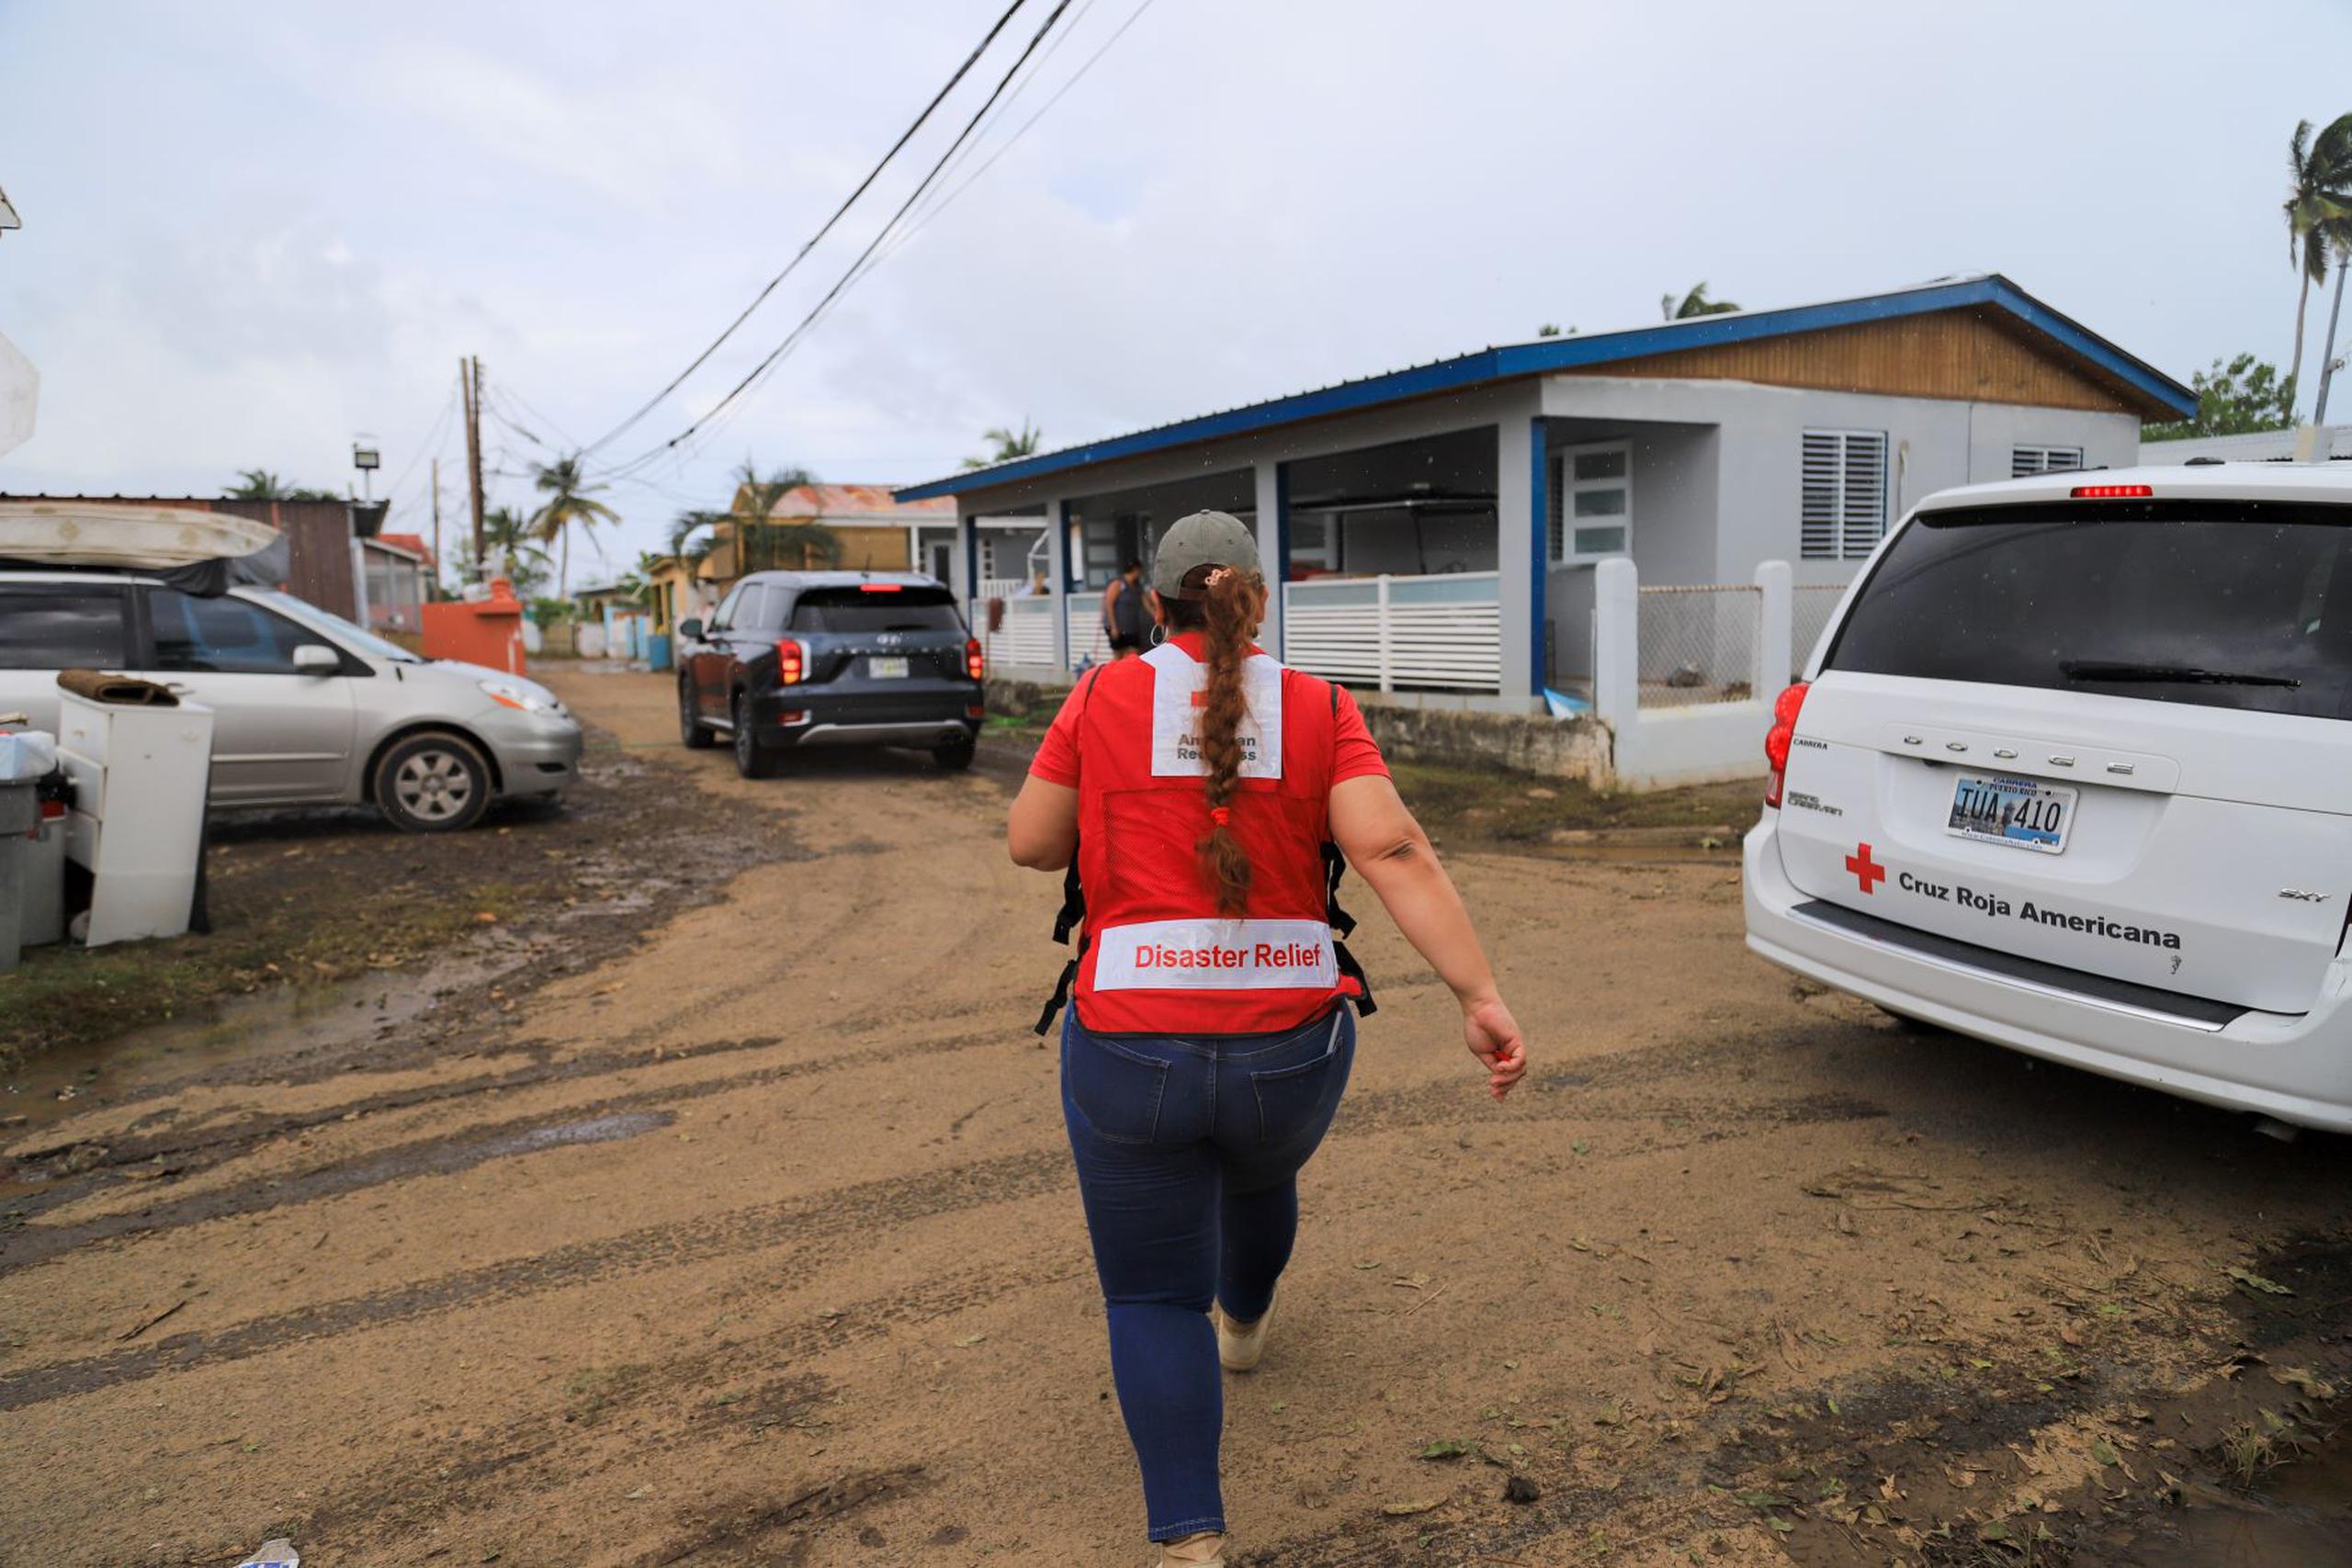 En la Isla hay 449 mujeres activas como voluntarias de la Cruz Roja Americana. De estas, 41 ocupan posiciones de liderato a nivel general o regional.